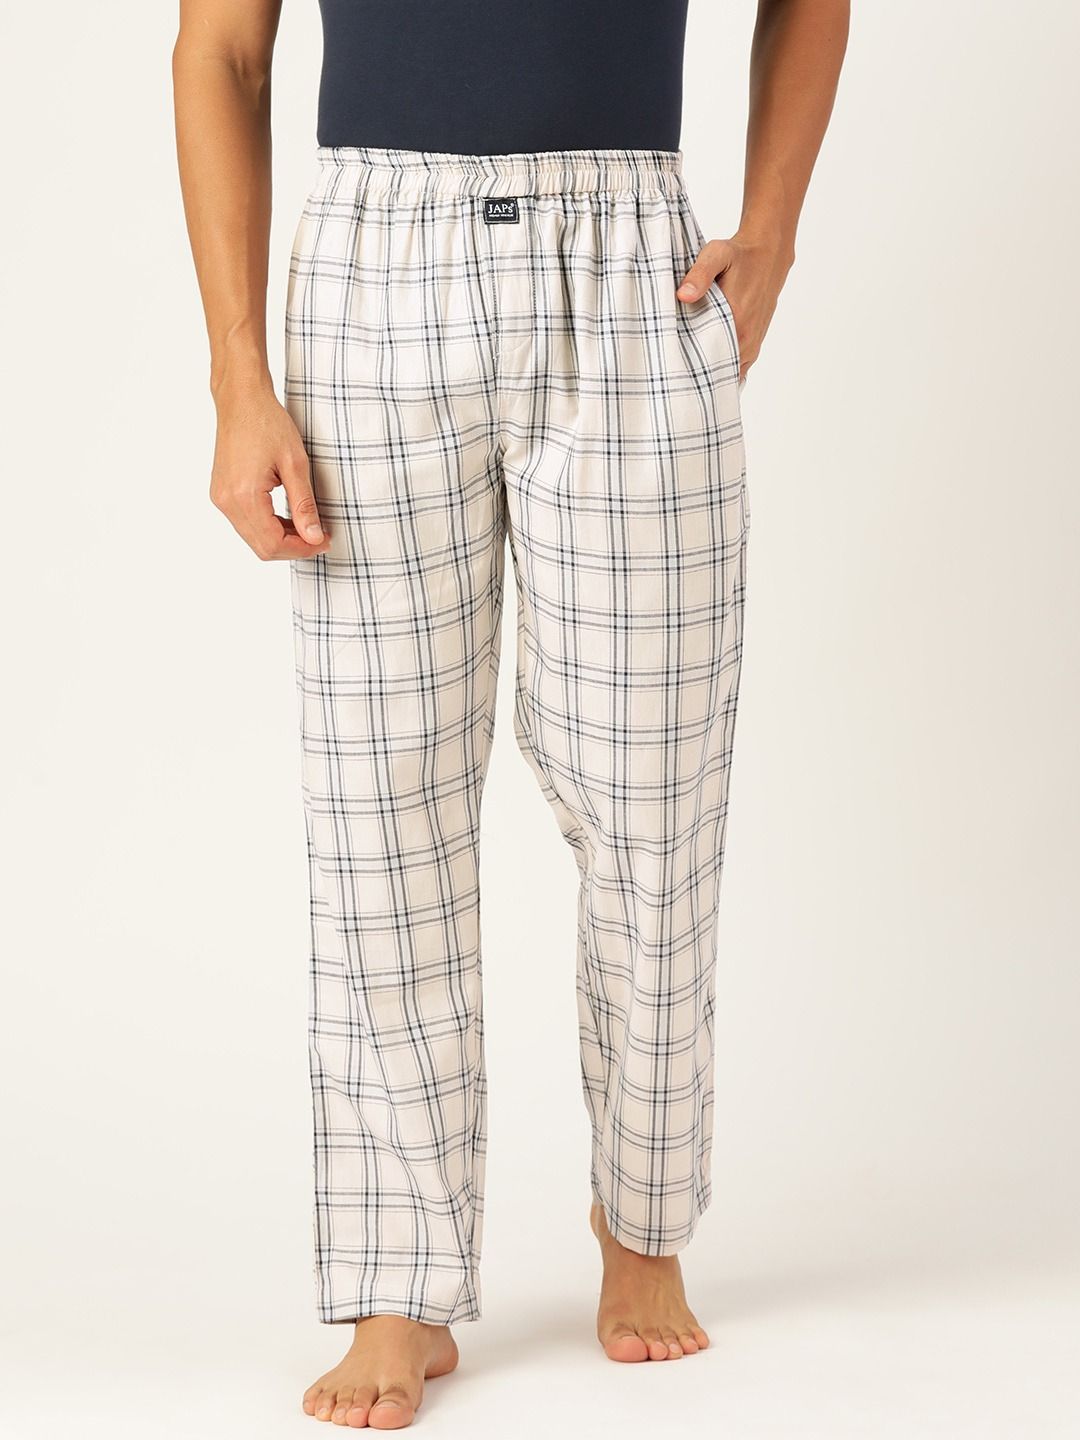 Calvin Klein Logo Mens 100 Cotton Knit Pajama Sleep Pants XL